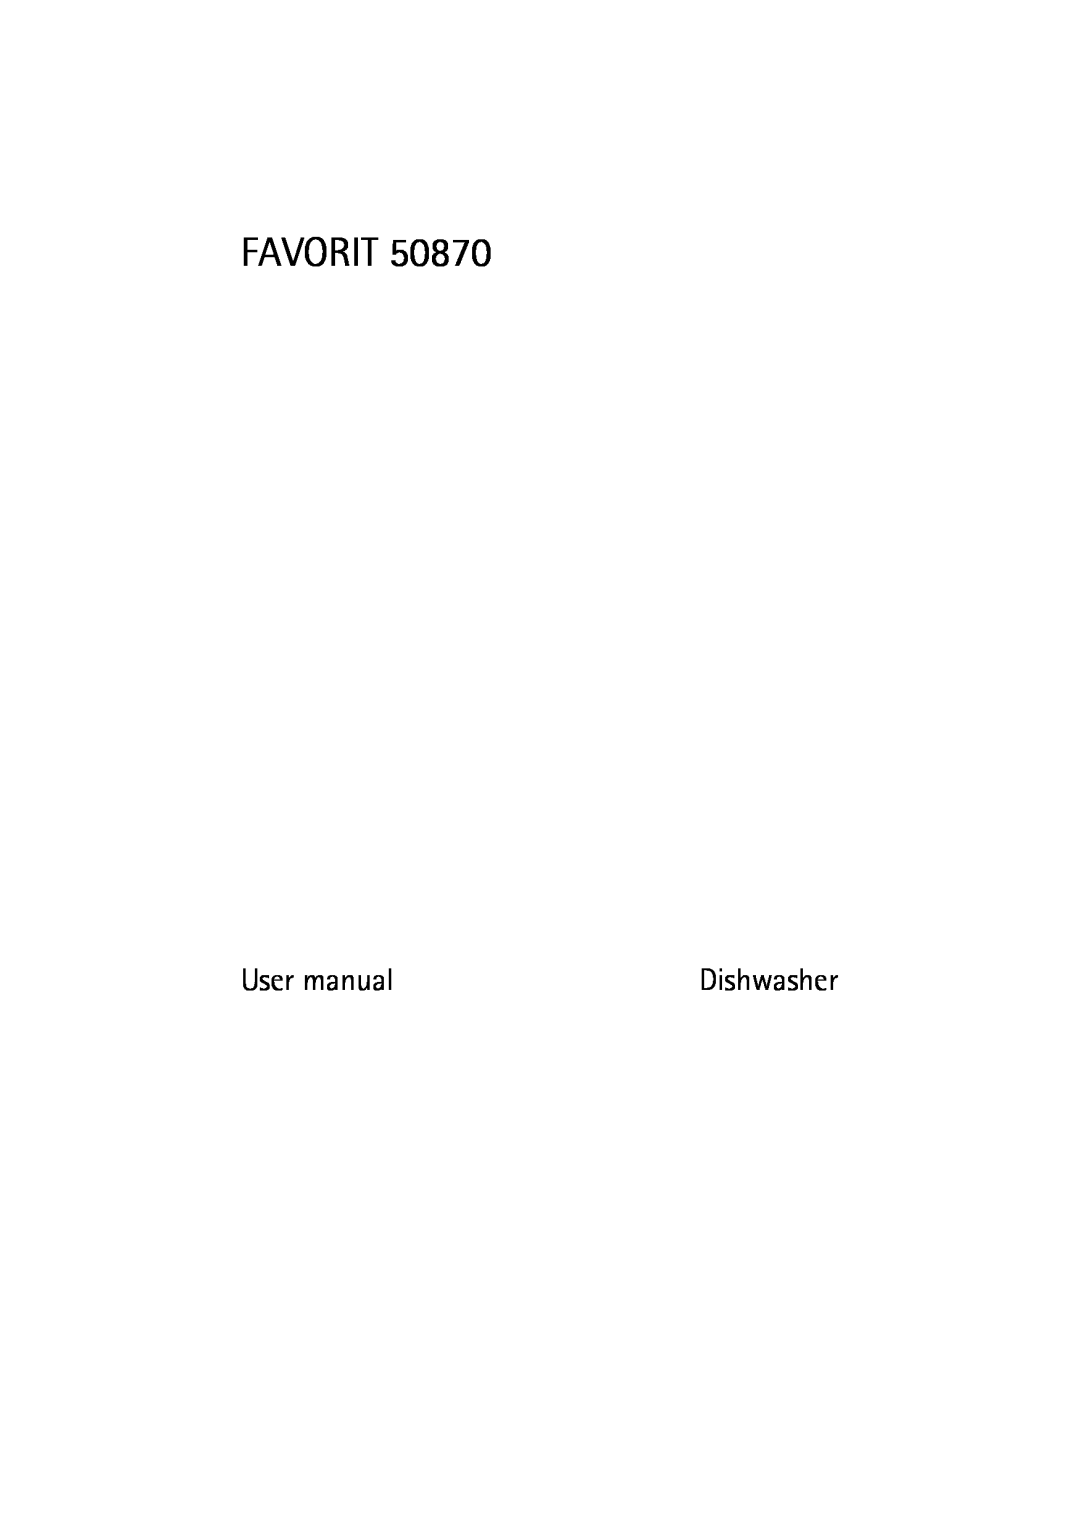 Electrolux 50870 user manual Favorit, User manual, Dishwasher 